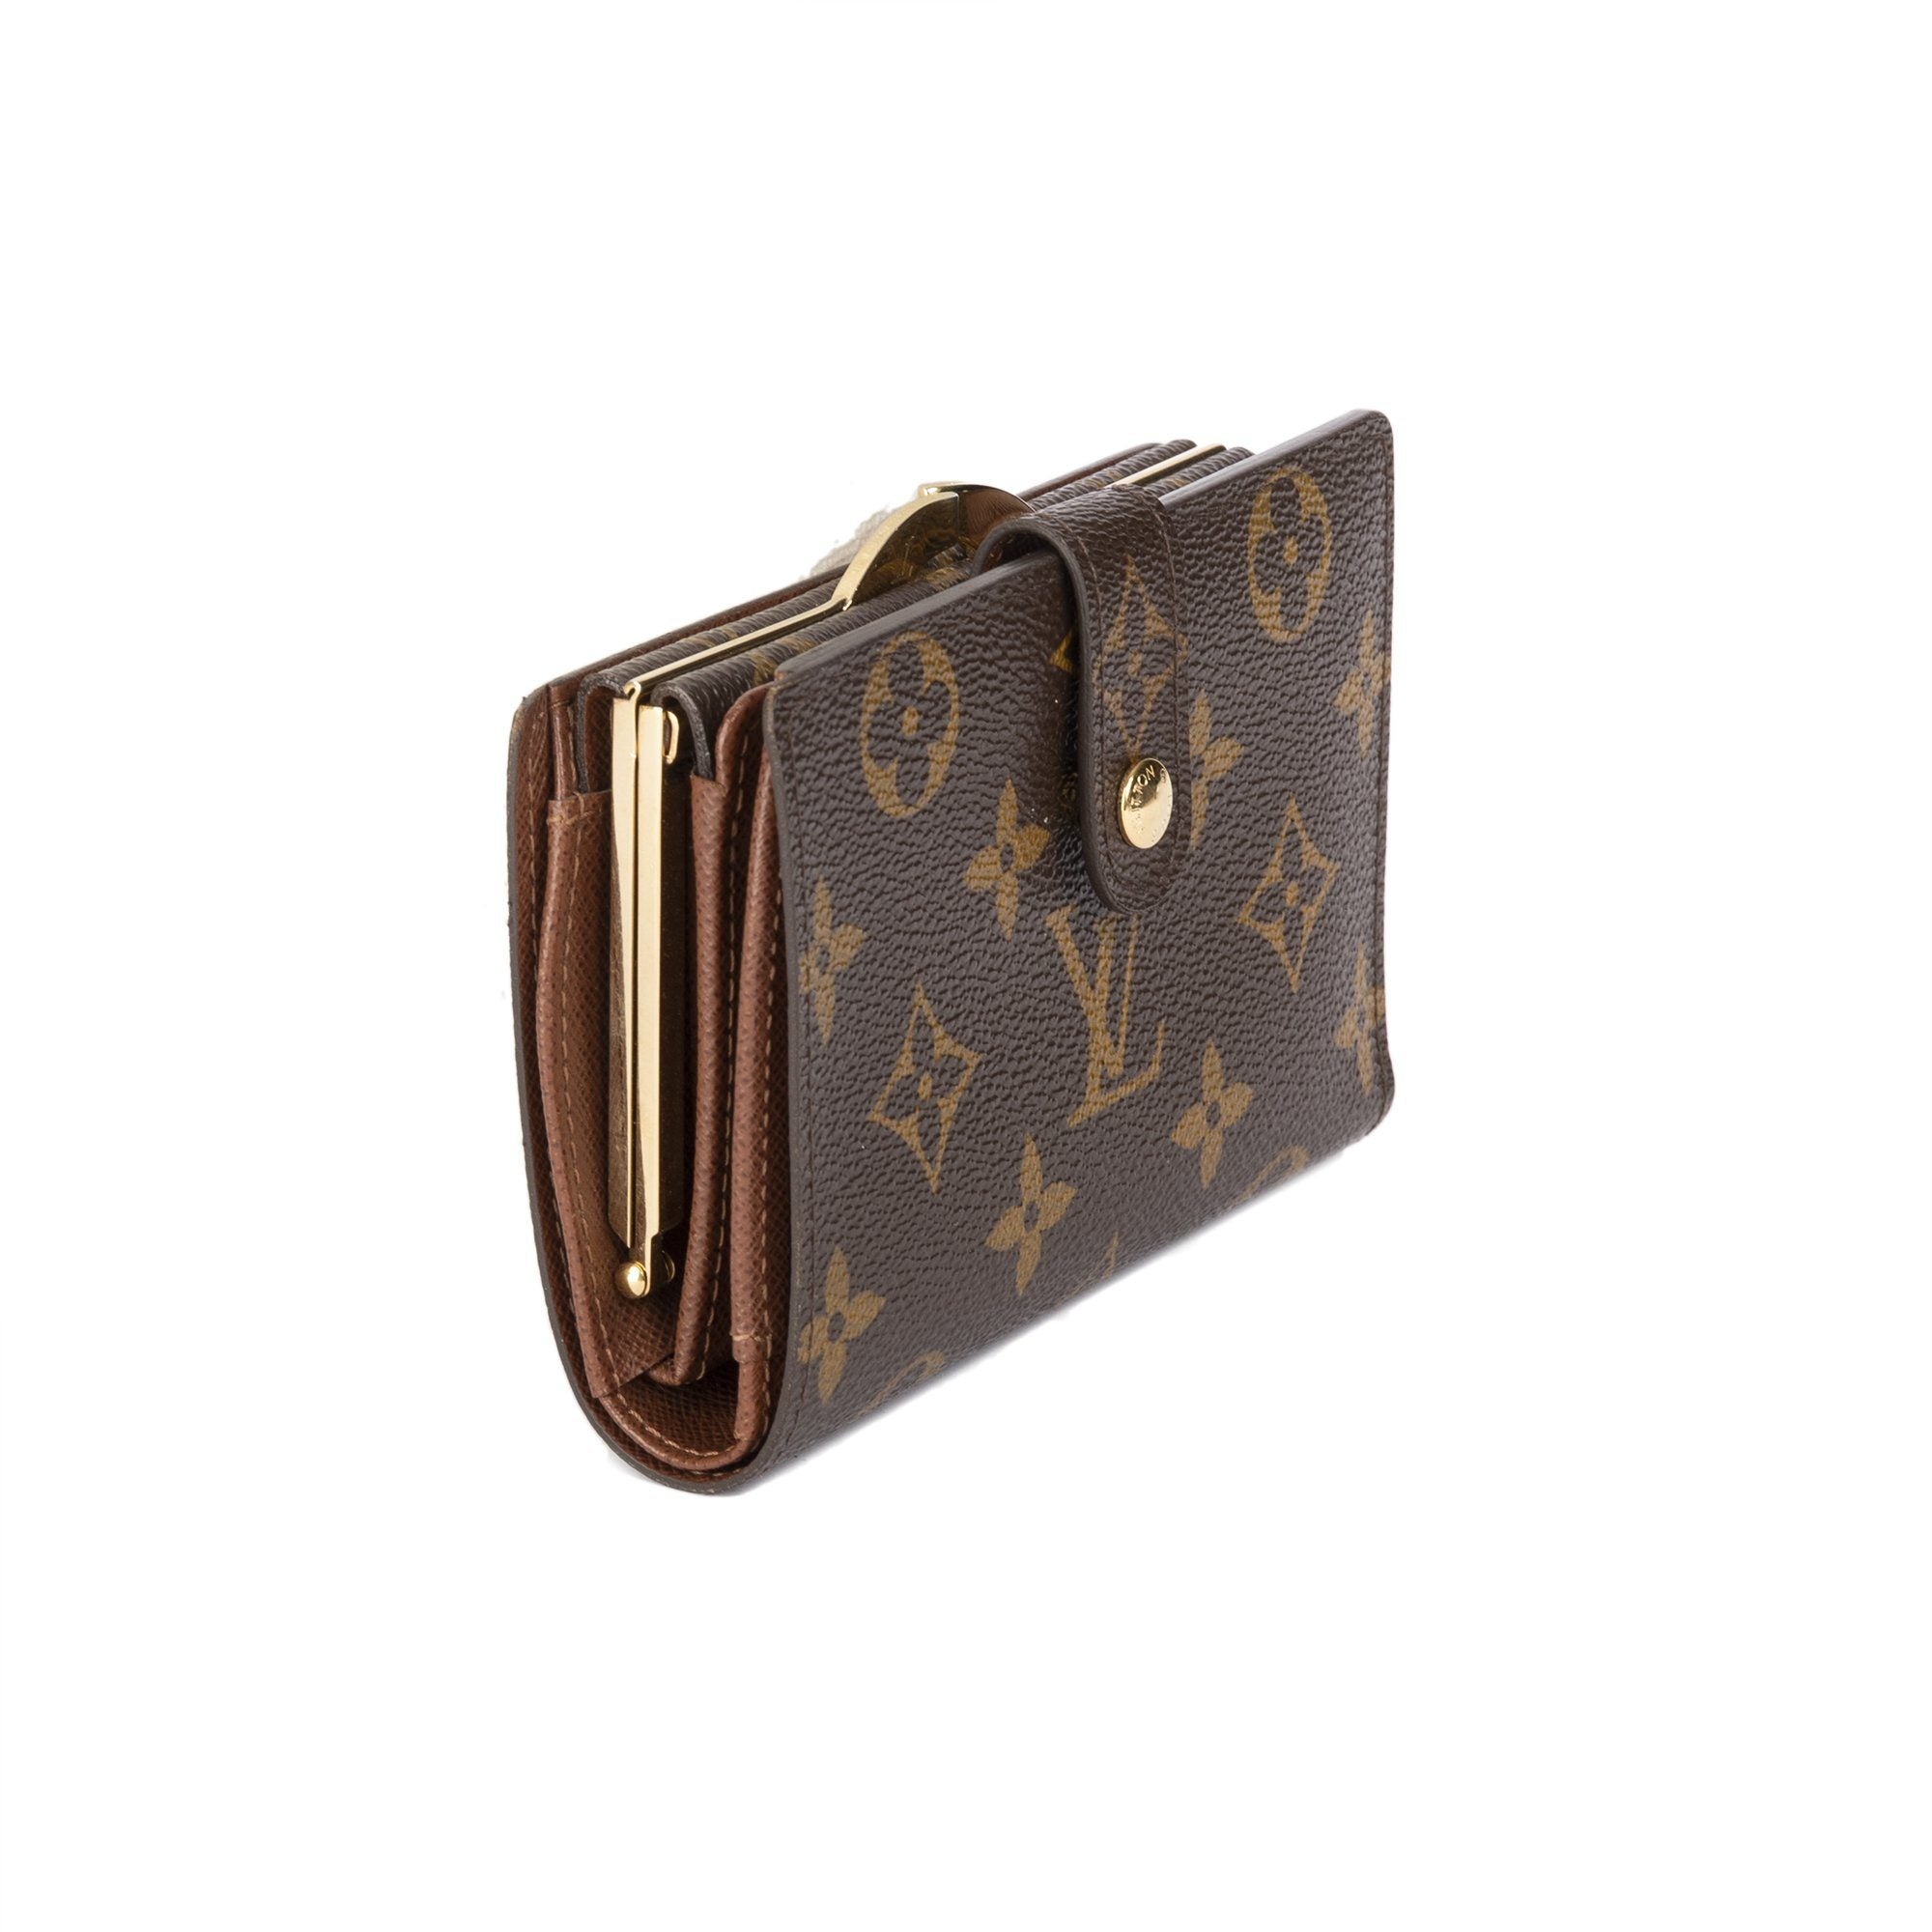 Louis Vuitton Monogram French Purse Wallet w Box 2 2b34543f 1628 4931 a99e 49a673f94d52